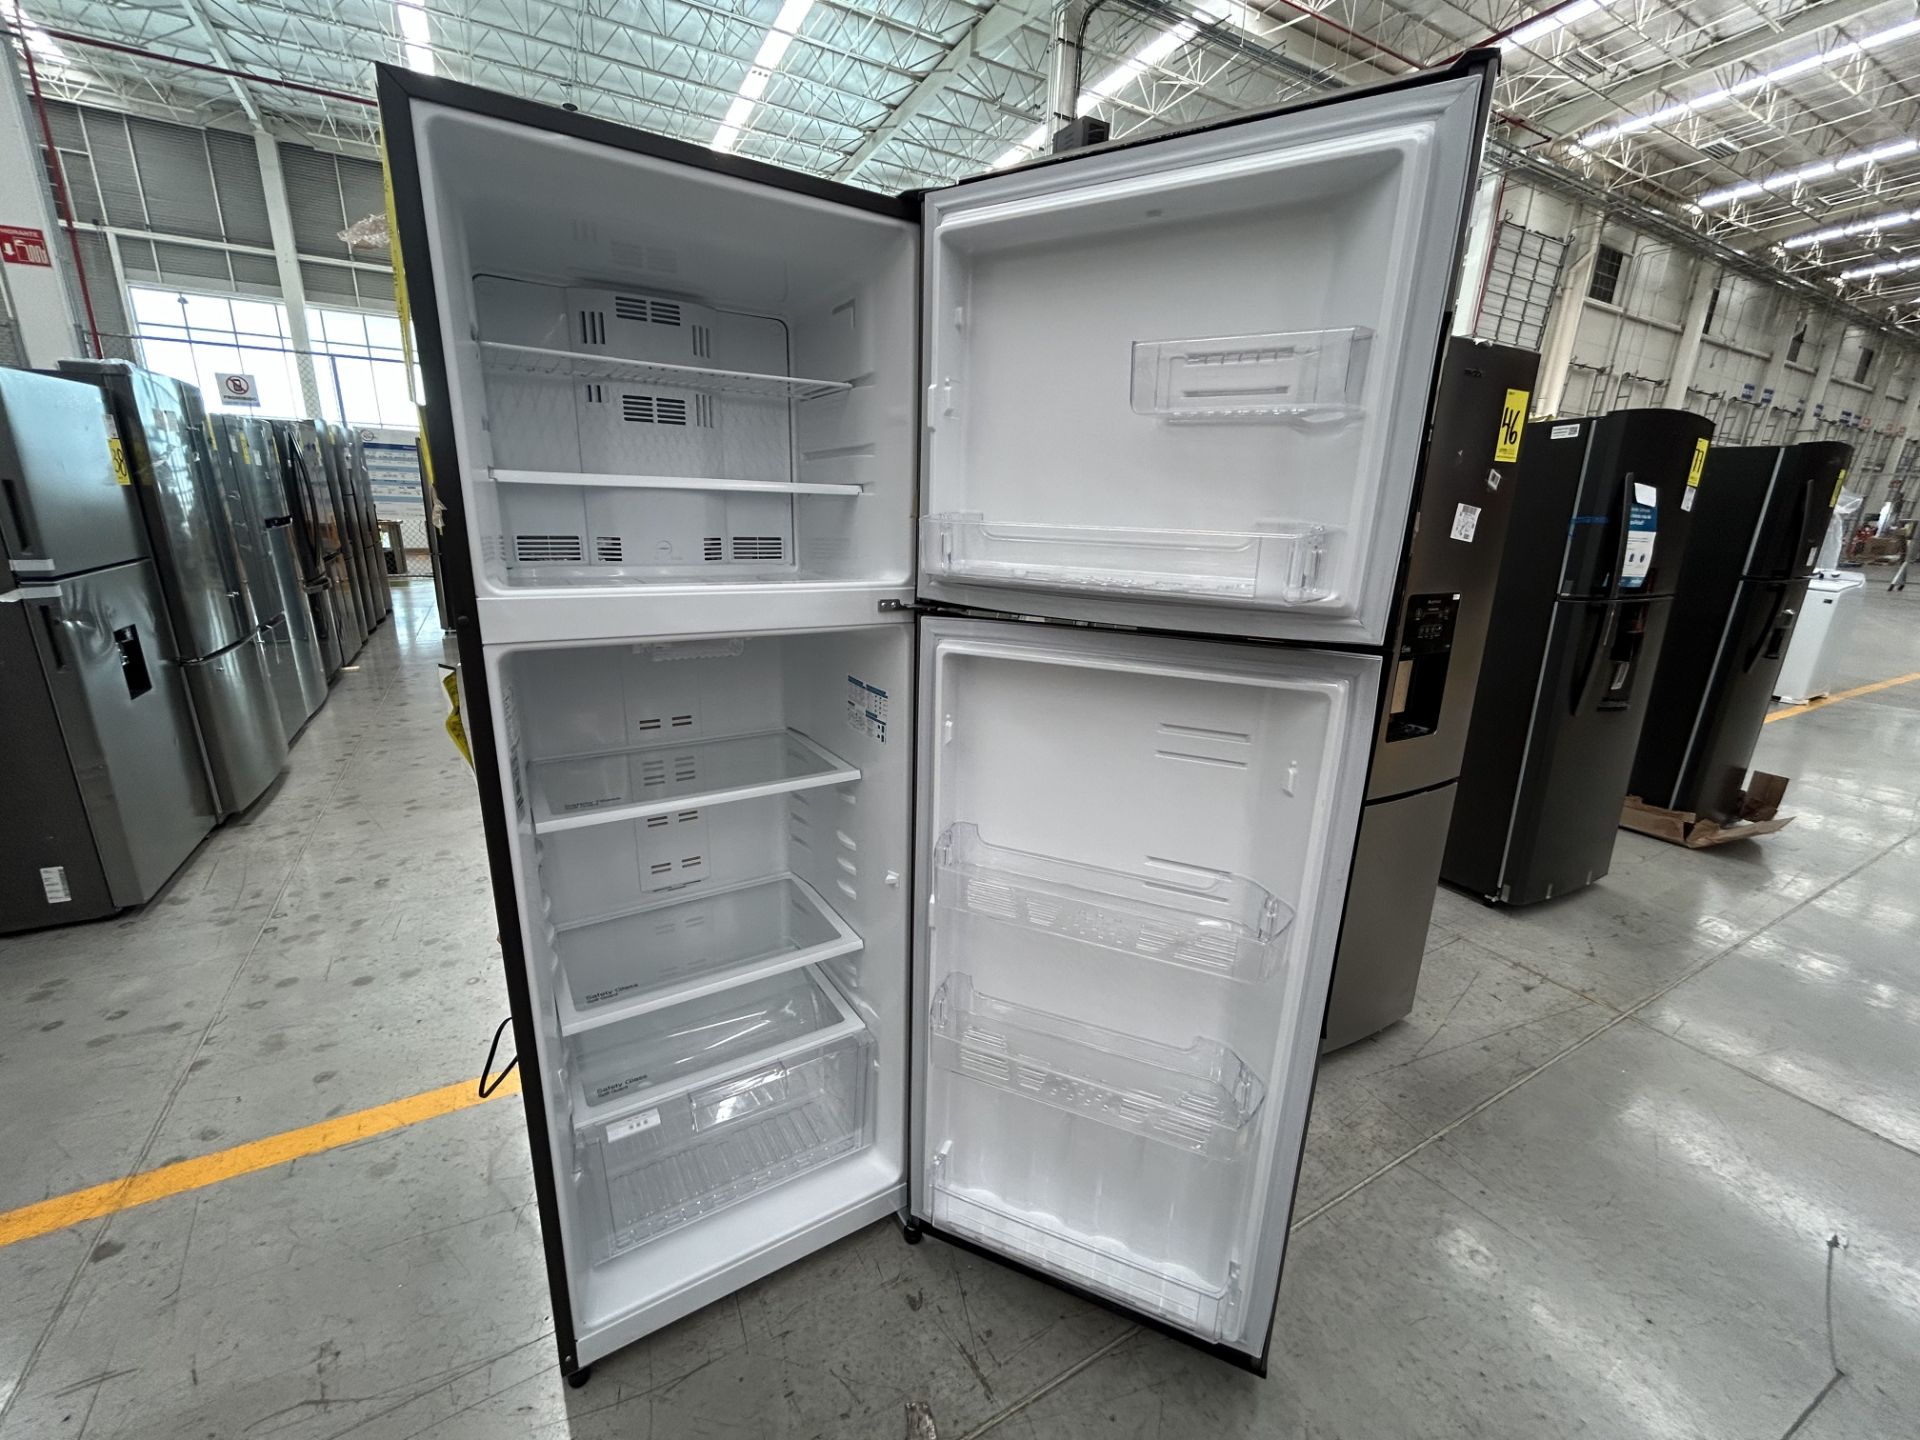 1 Refrigerador Marca MABE, Modelo RMA400IVMRM0, Serie 503385 Color GRIS (No se Asegura su Funcionam - Image 4 of 5